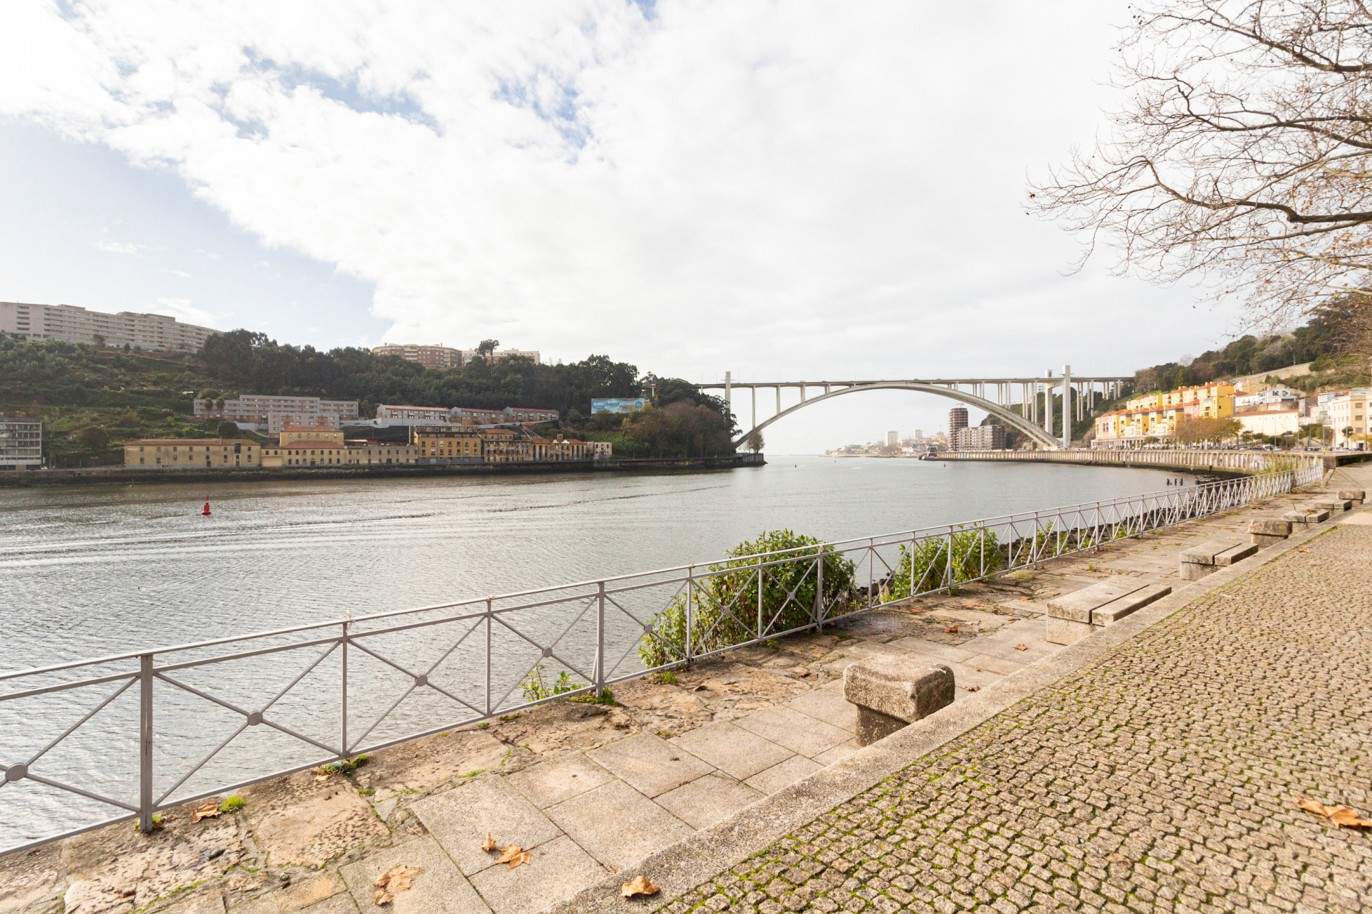 Moradia nova V2 em condomínio privado junto ao rio, Porto_213017